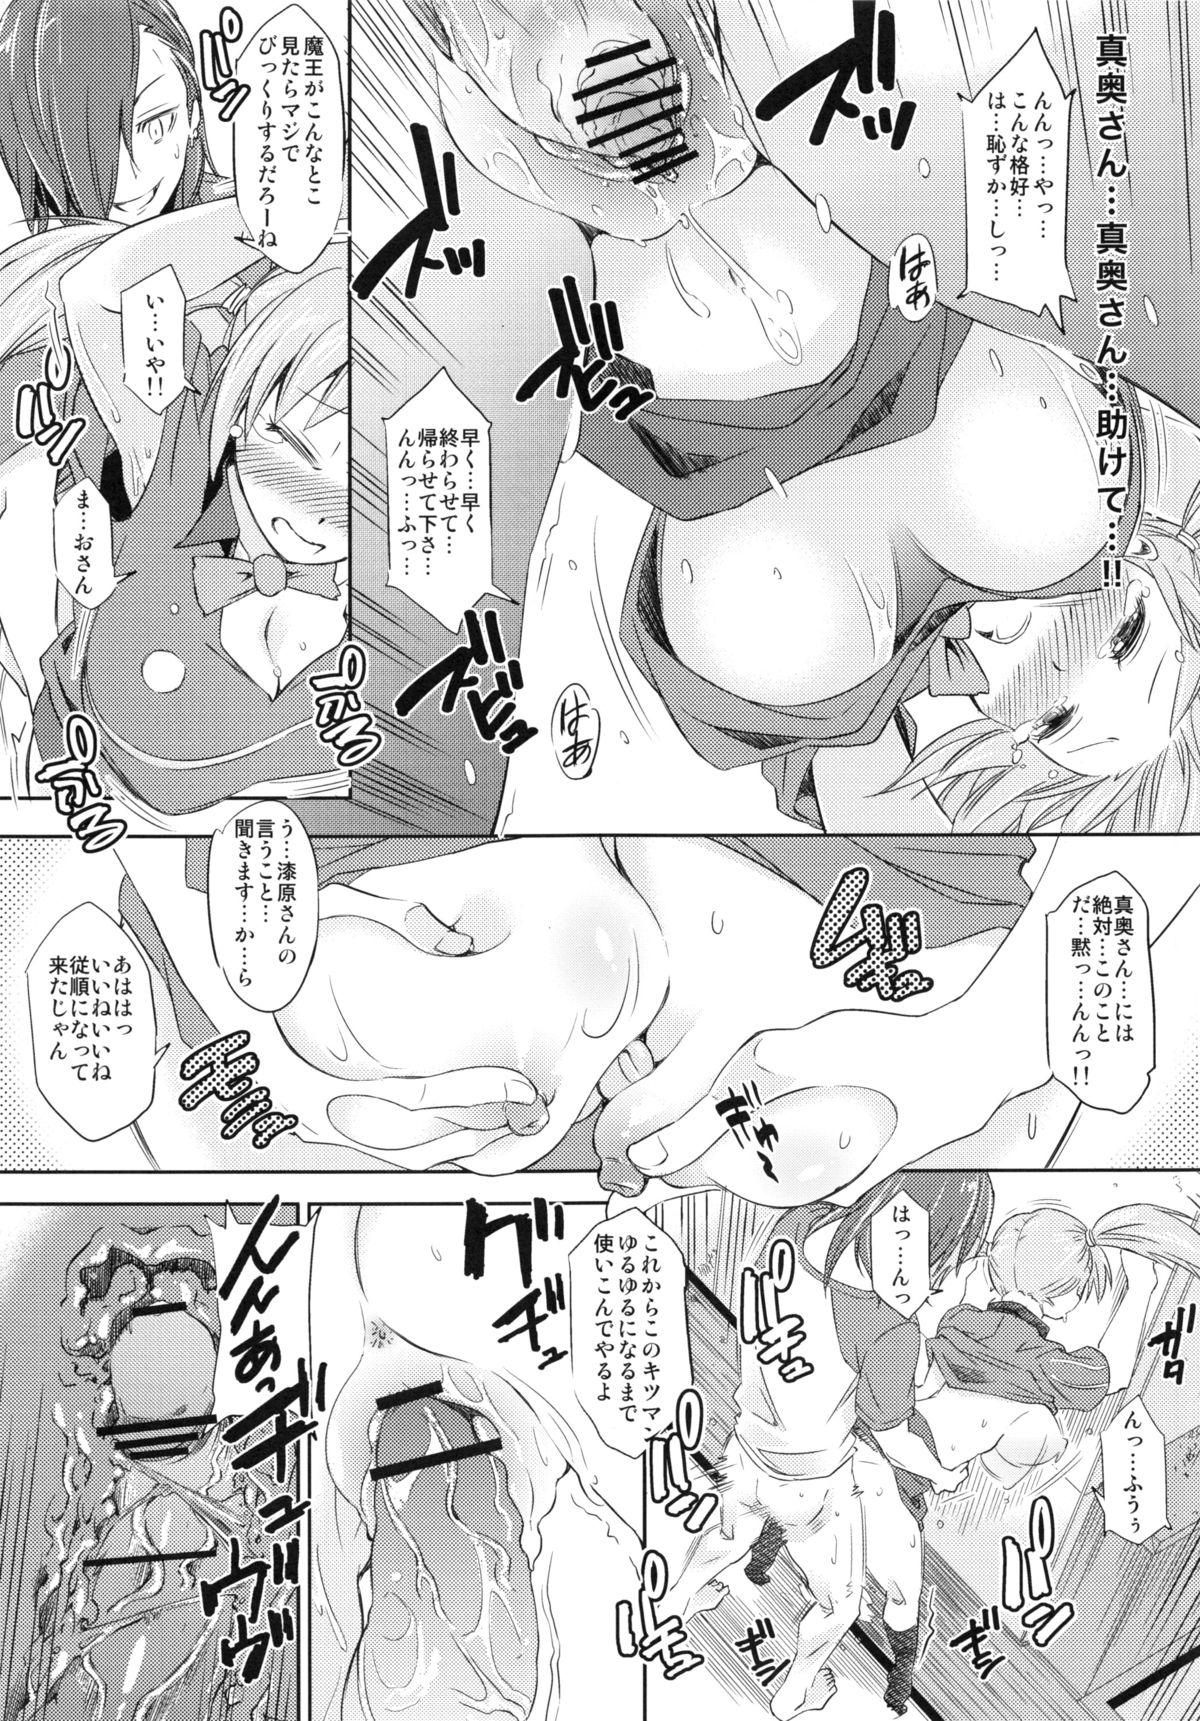 Underwear (C84) [SMUGGLER (Kazuwo Daisuke)] Chii-chan, Urushihara no Seishori-gakari ni naru (Hataraku Maou-sama!) - Hataraku maou-sama Putaria - Page 10